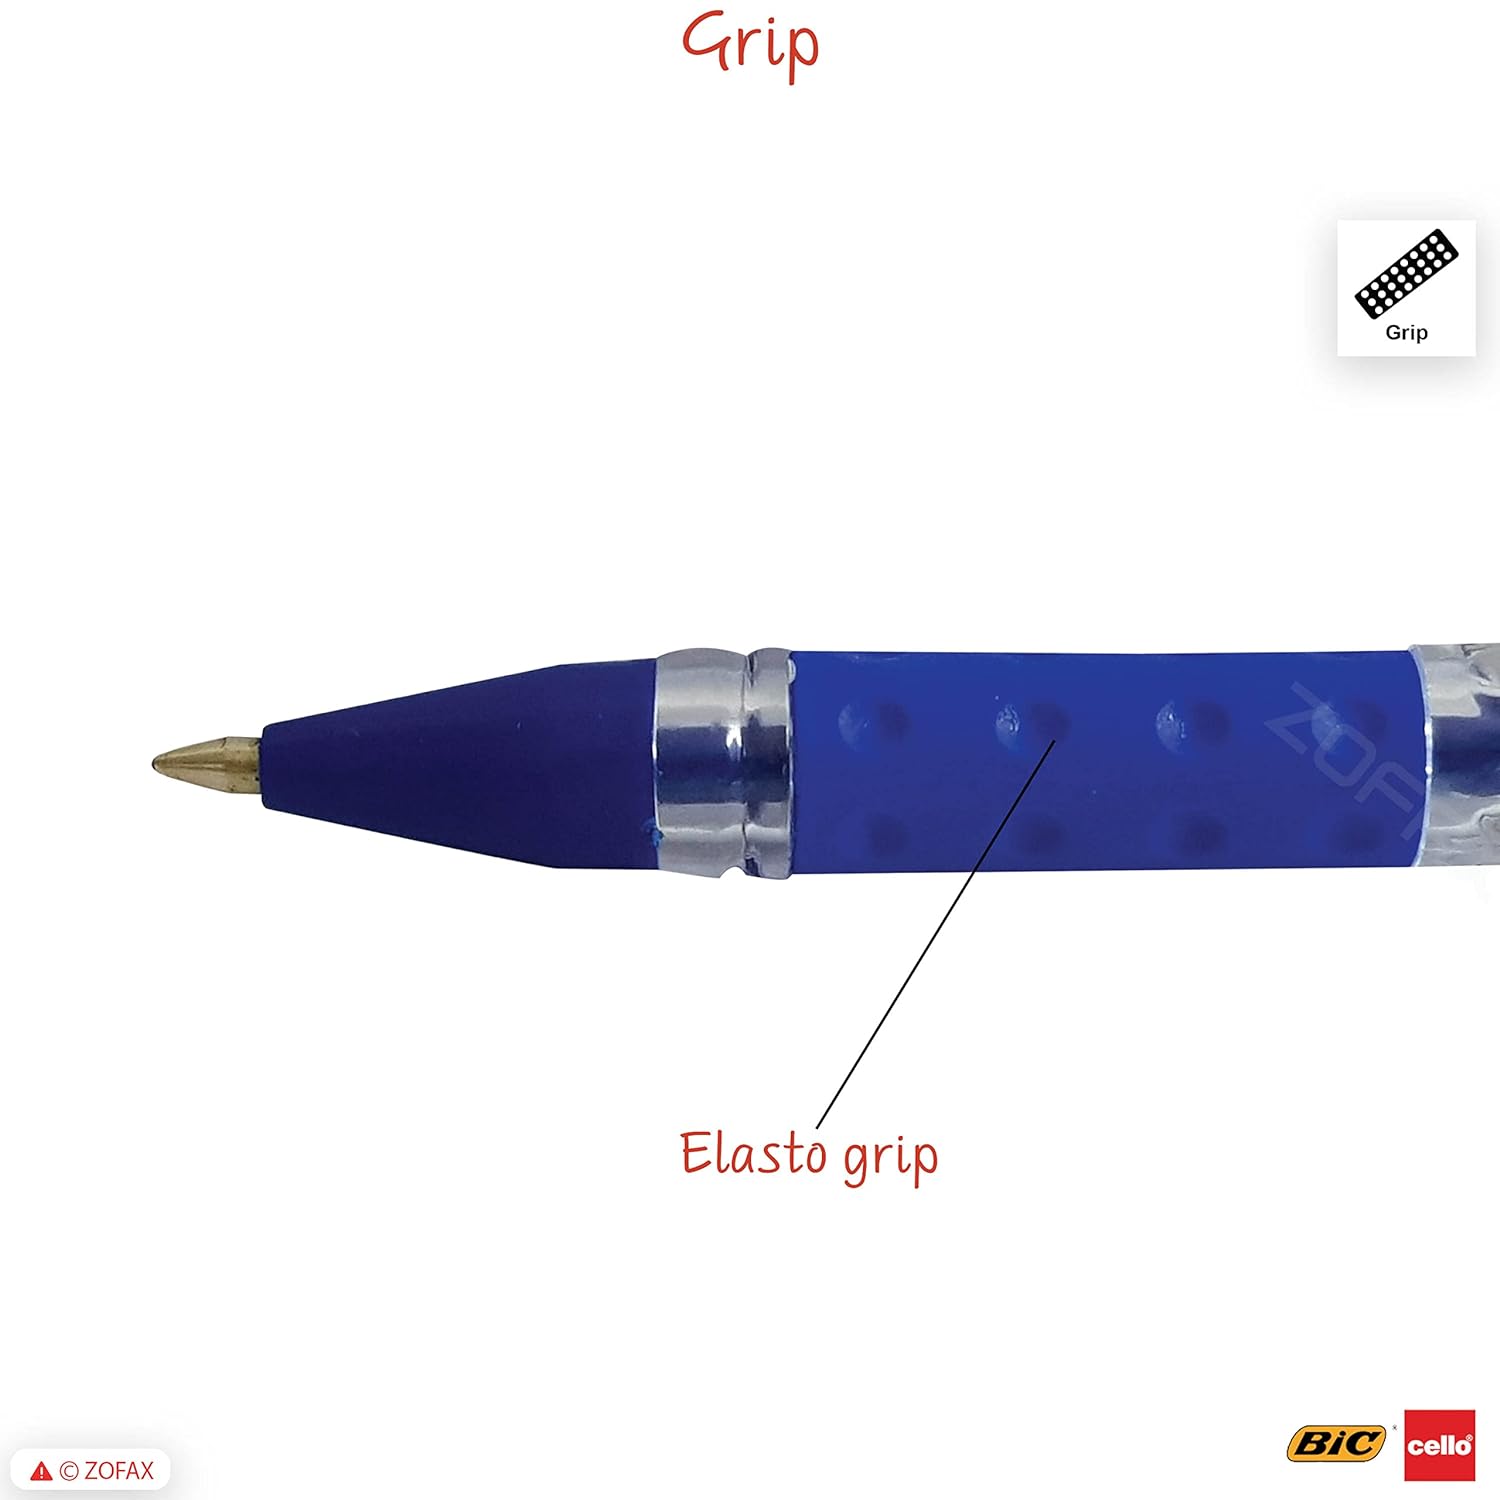 Cello Signature Ethos Gift Set | Premium Pen with Keychain | Signature Gift  Set |Best pen gift for men and women | Pen set for gifting | Pen gift set  pen set :